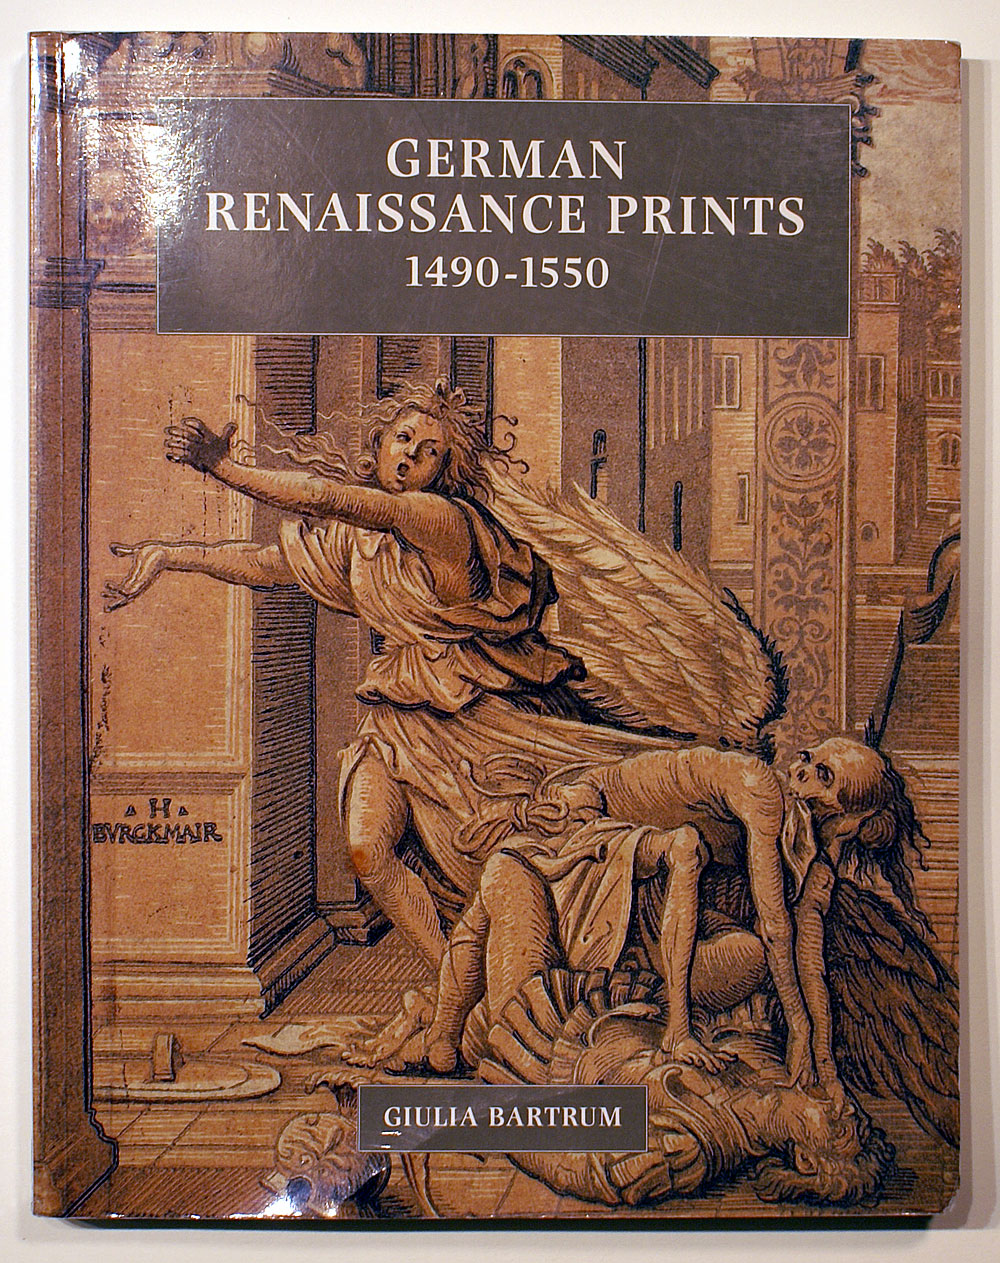 GERMAN RENAISSANCE PRINTS 1490-1550 - PUBLISHED 1995